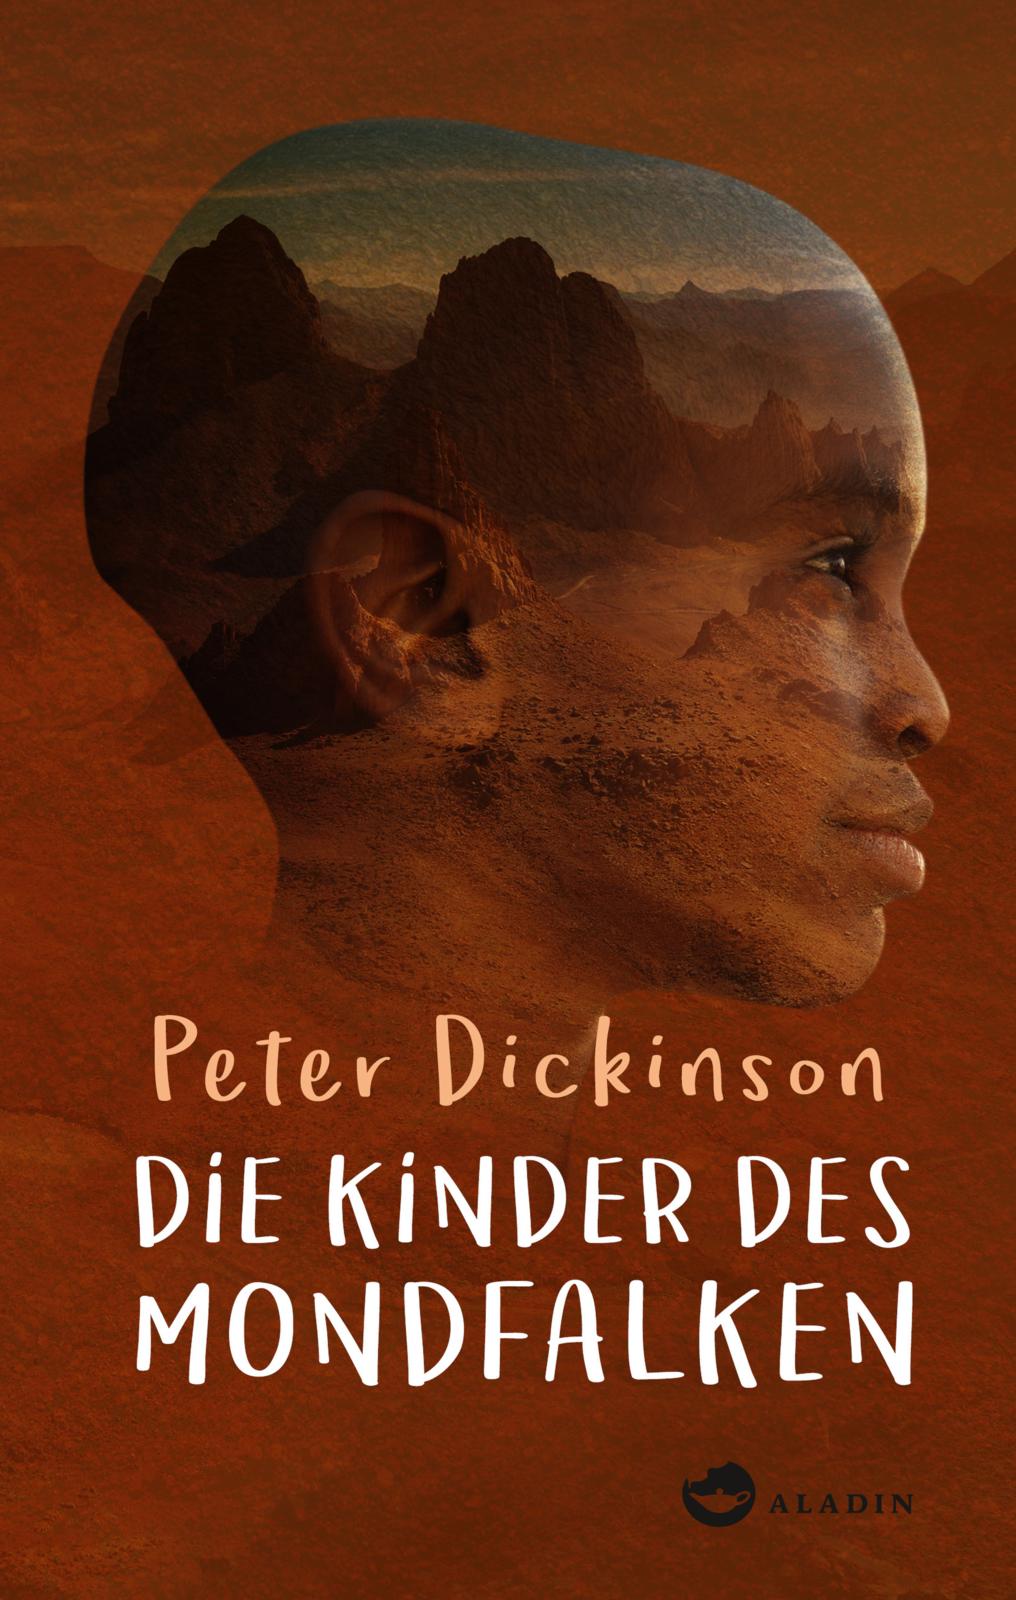 Buchempfehlung: "Die Kinder des Mondfalken" von Peter Dickinson